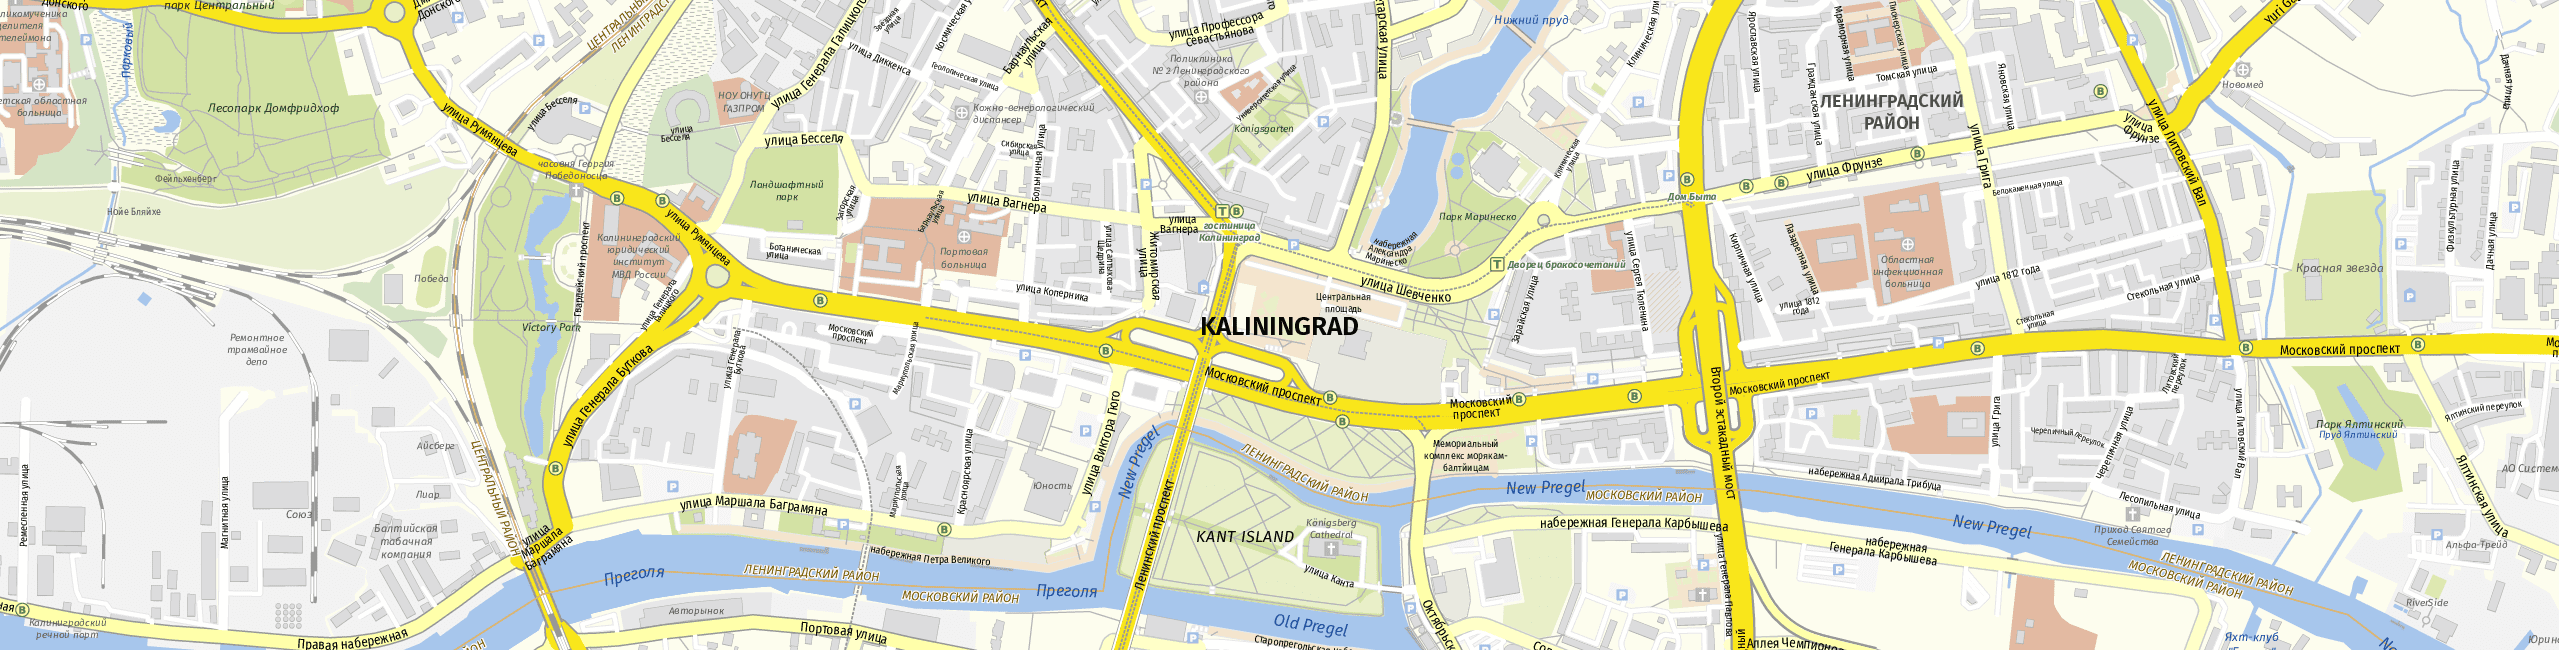 Stadtplan Kaliningrad zum Downloaden.